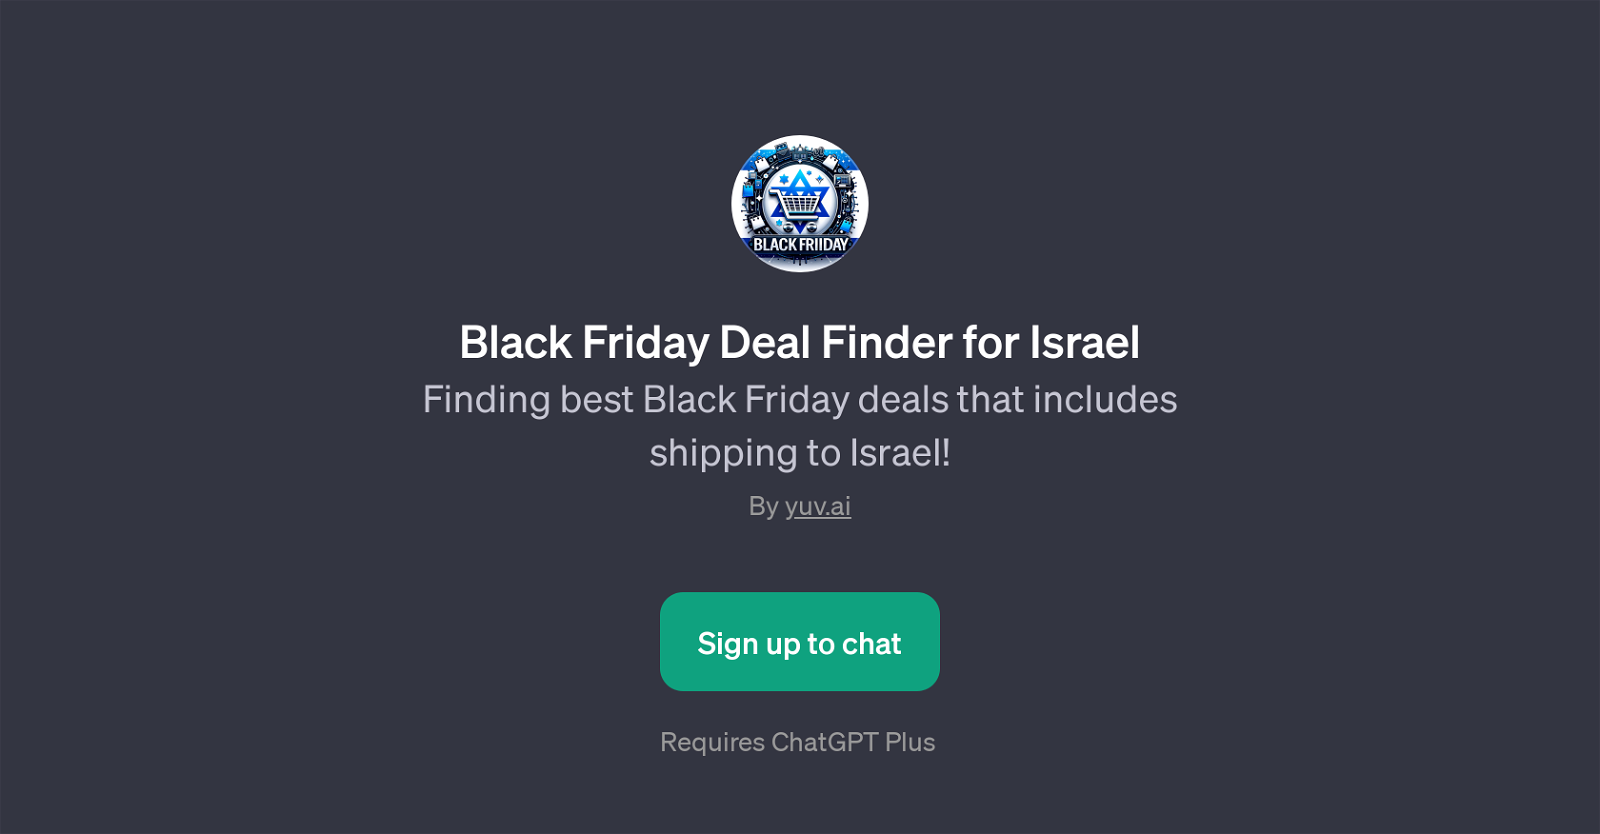 Black Friday Deal Finder for Israel website